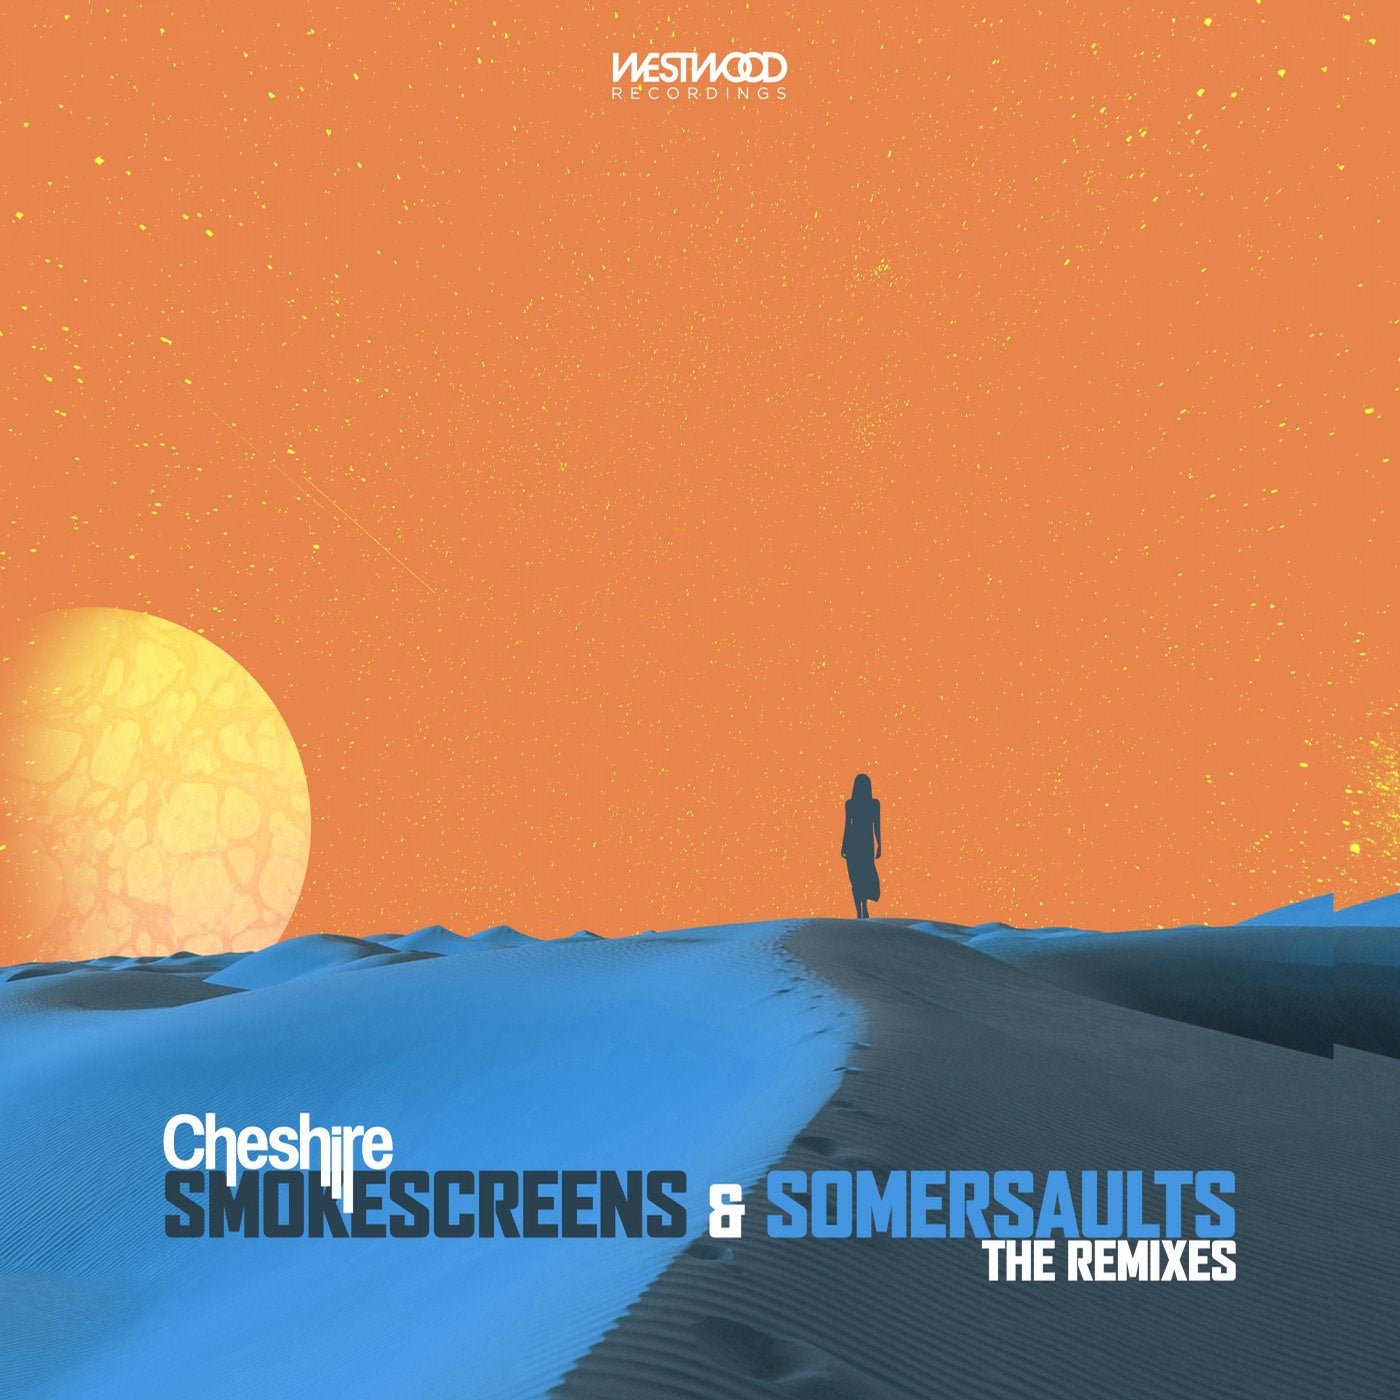 Smokescreens & Somersaults (The Remixes)